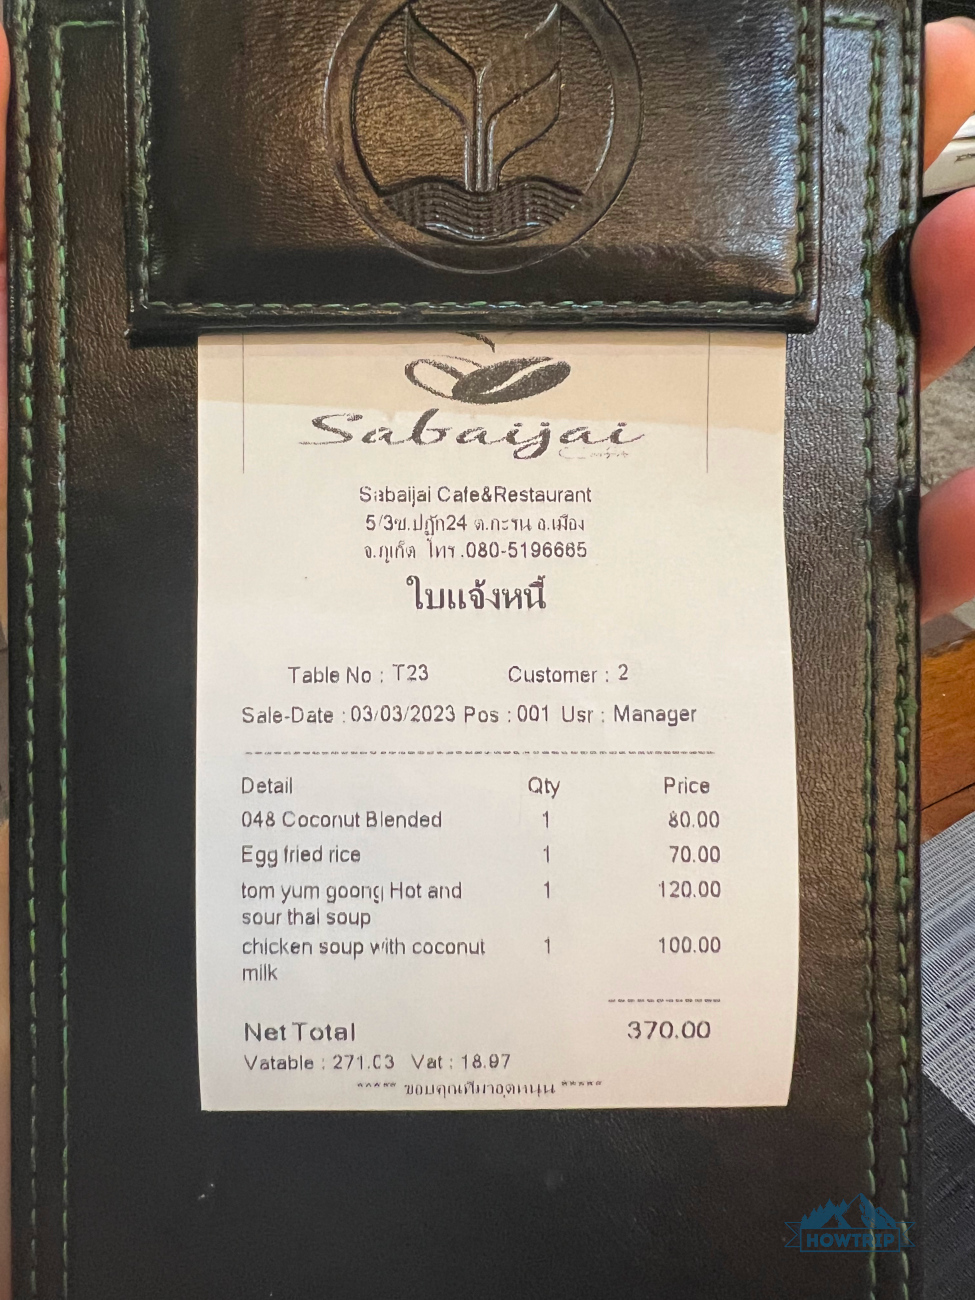 цены в кафе на Пхукете